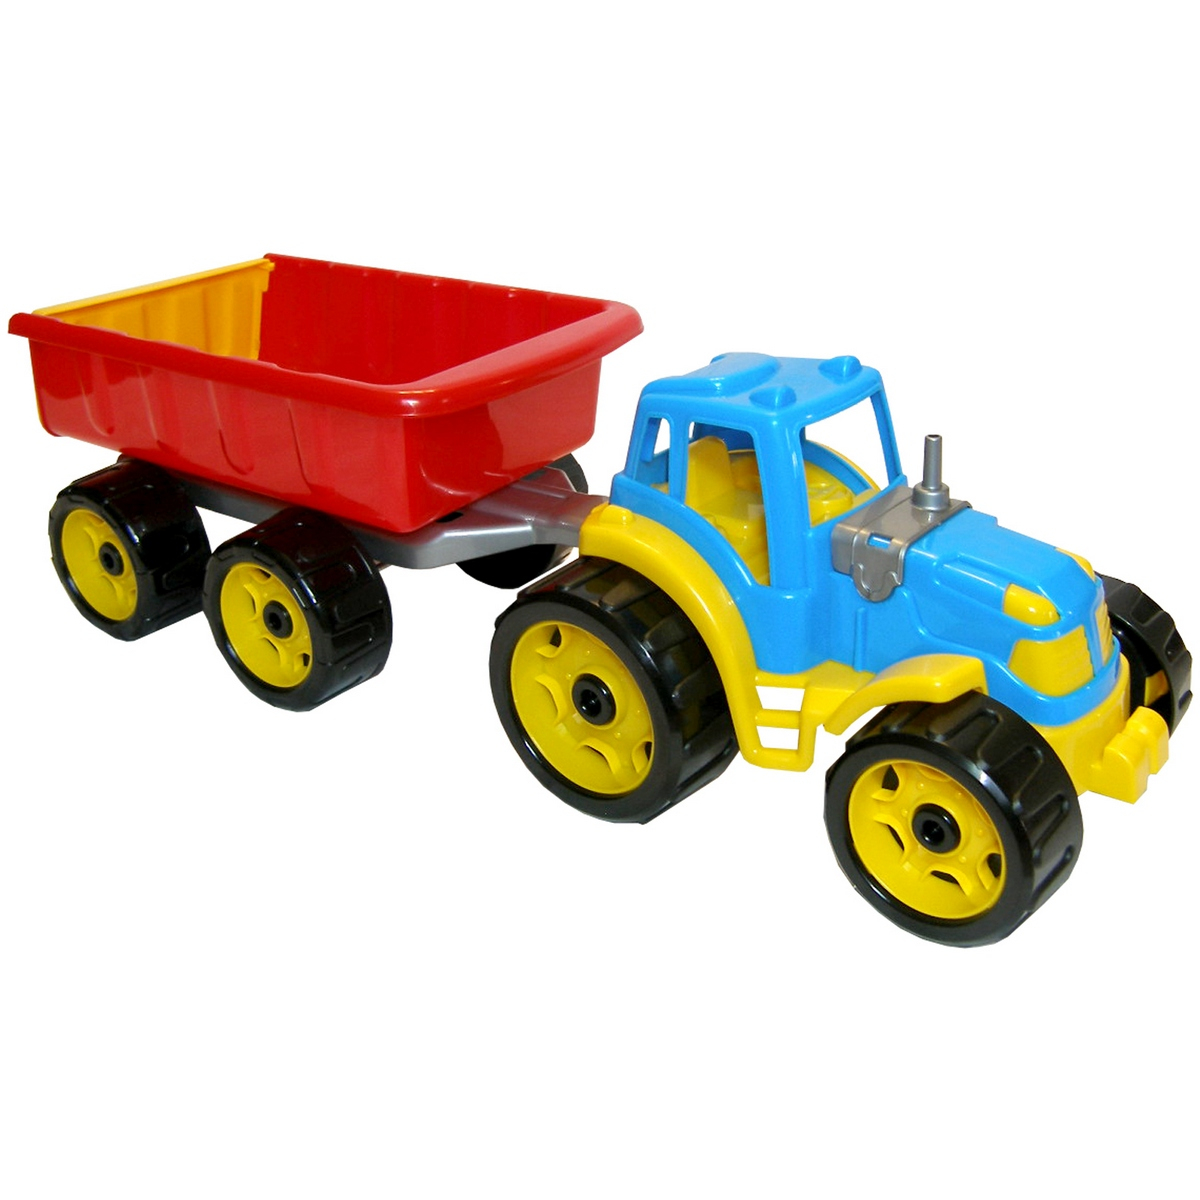 

Іграшка Трактор з причепом Технок Техно 3442